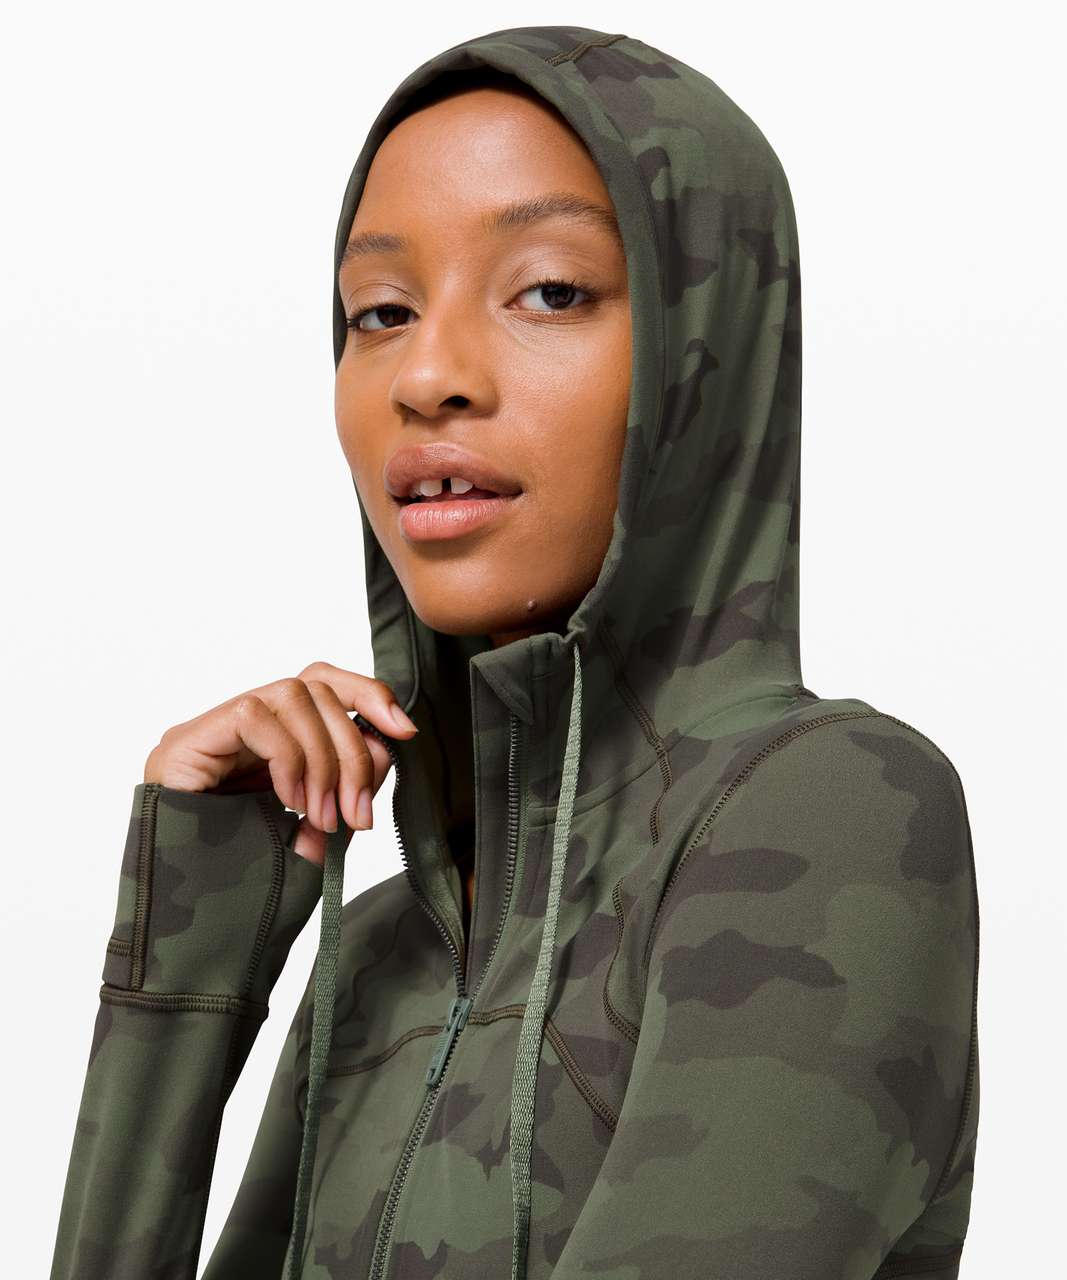 Lululemon Hooded Define Jacket *Nulu Green Twill, Women's Fashion